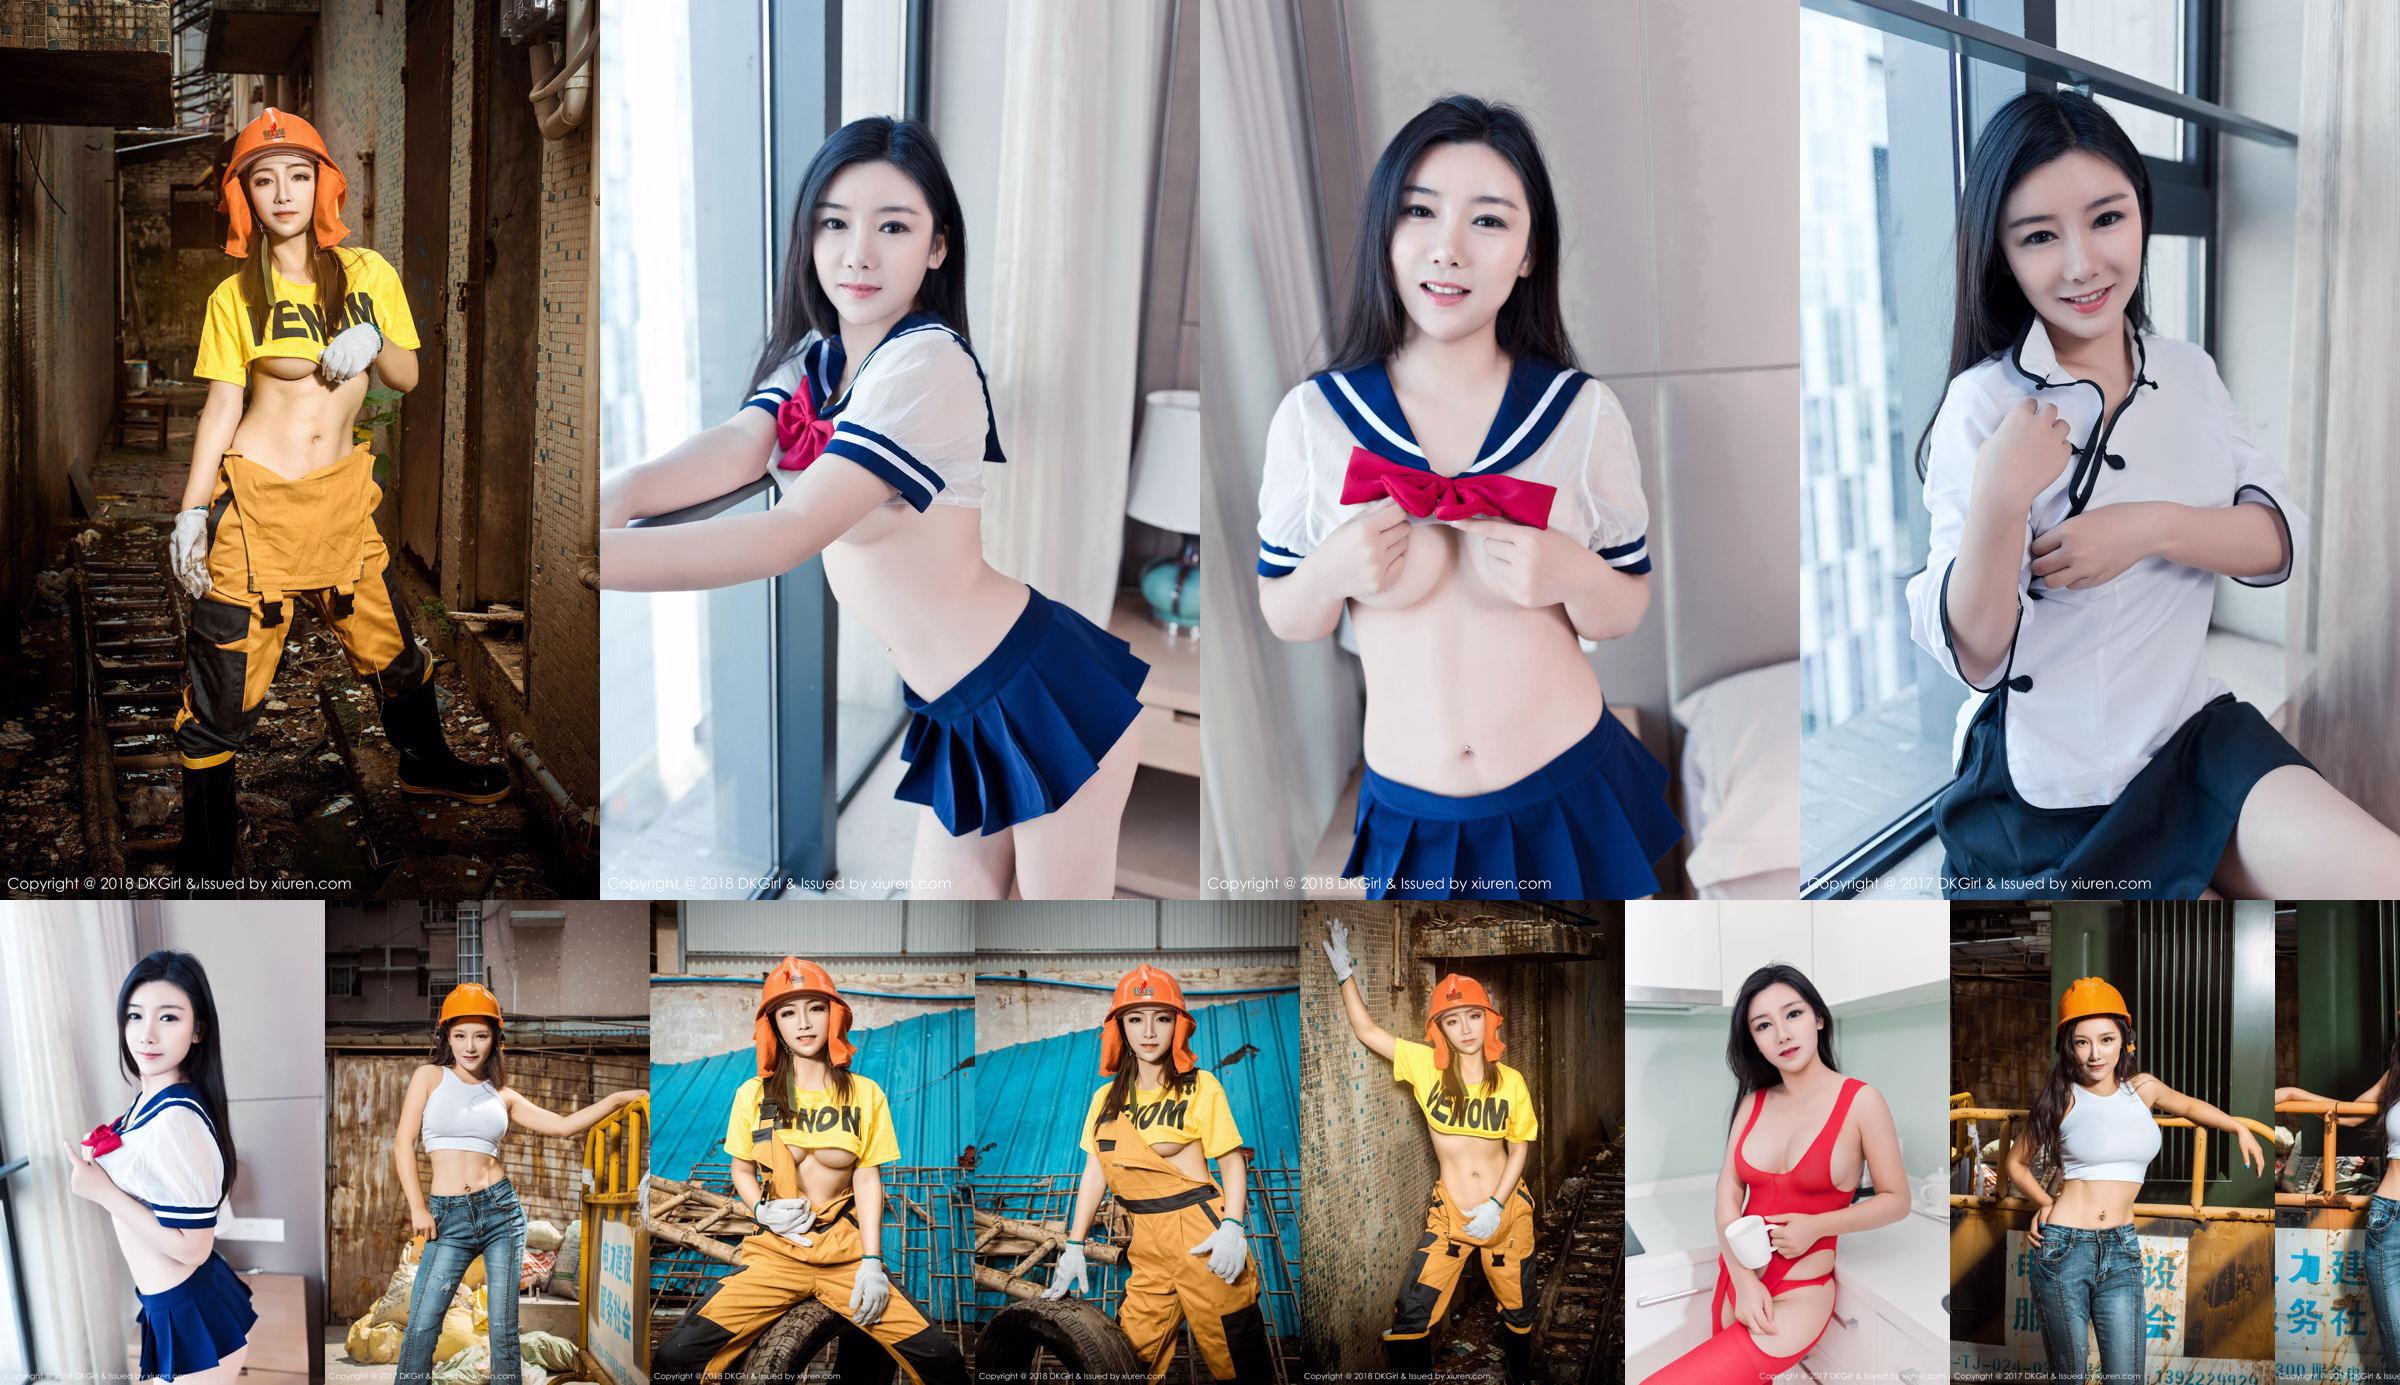 Himebijin << Série de uniforme escolar Jinbi + lingerie SM emocional >> [Mijoro DK Girl] Vol.061 No.f73518 Página 1